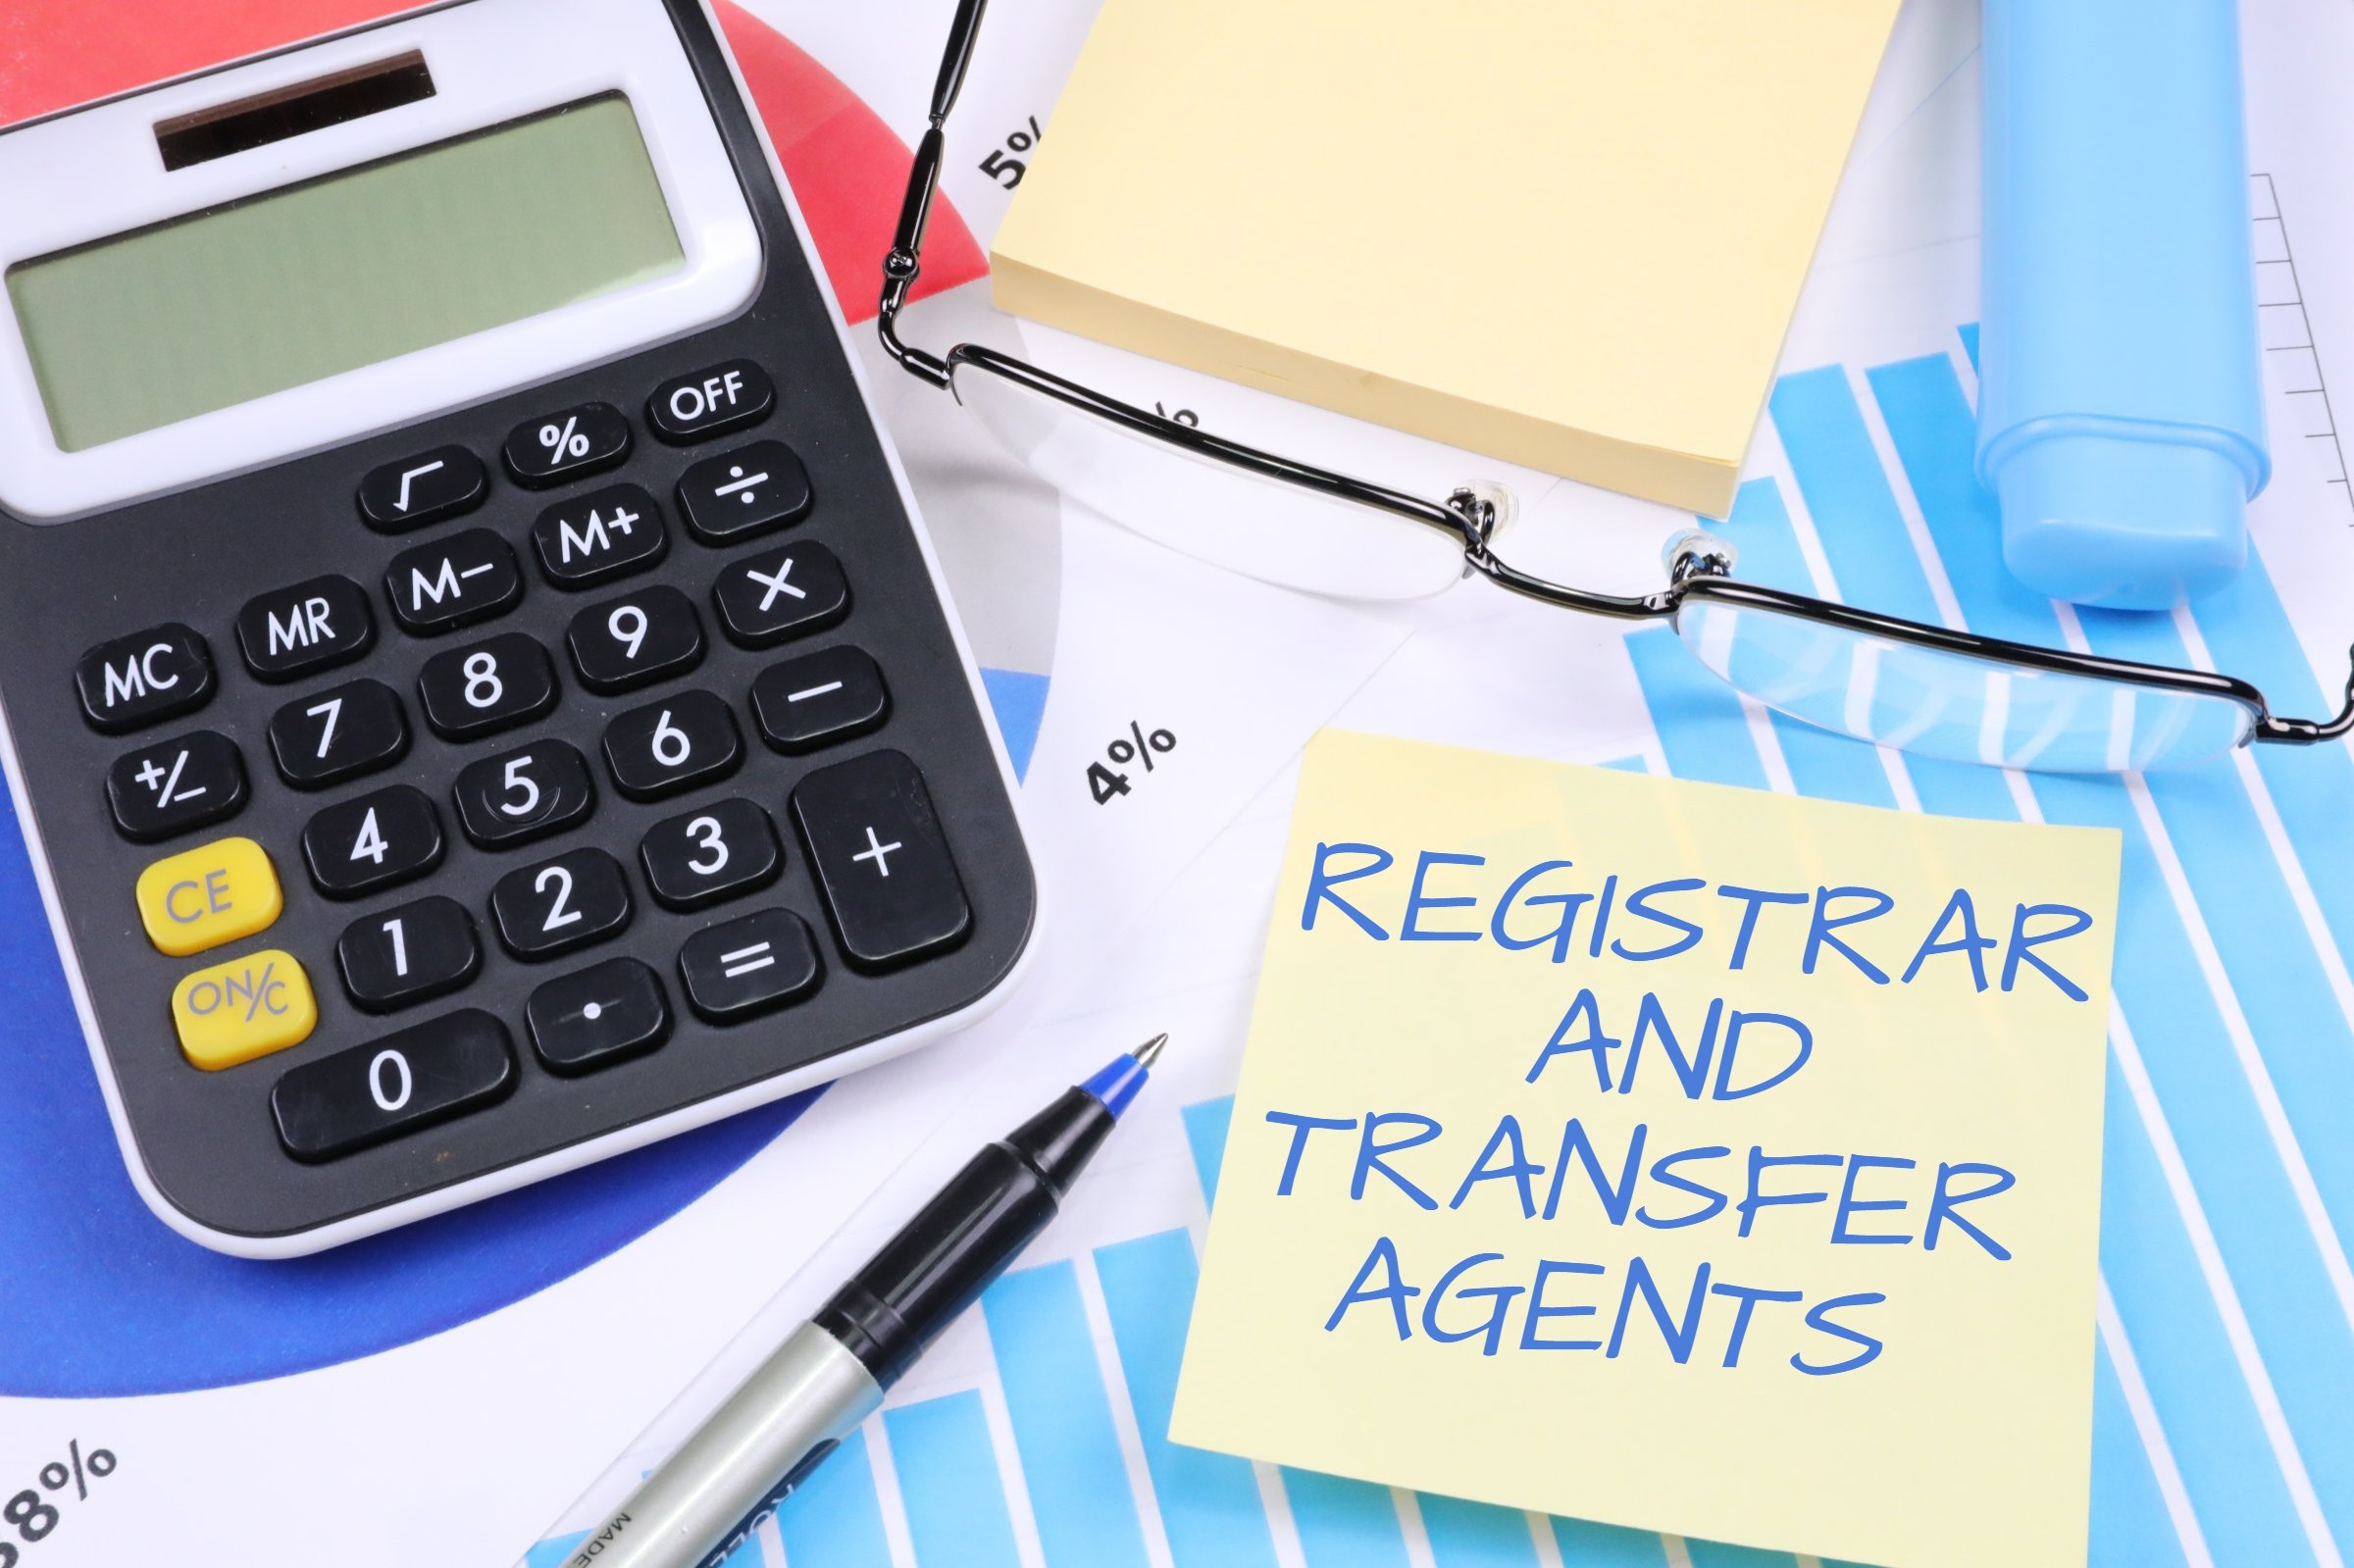 Registrar and Transfer Agents